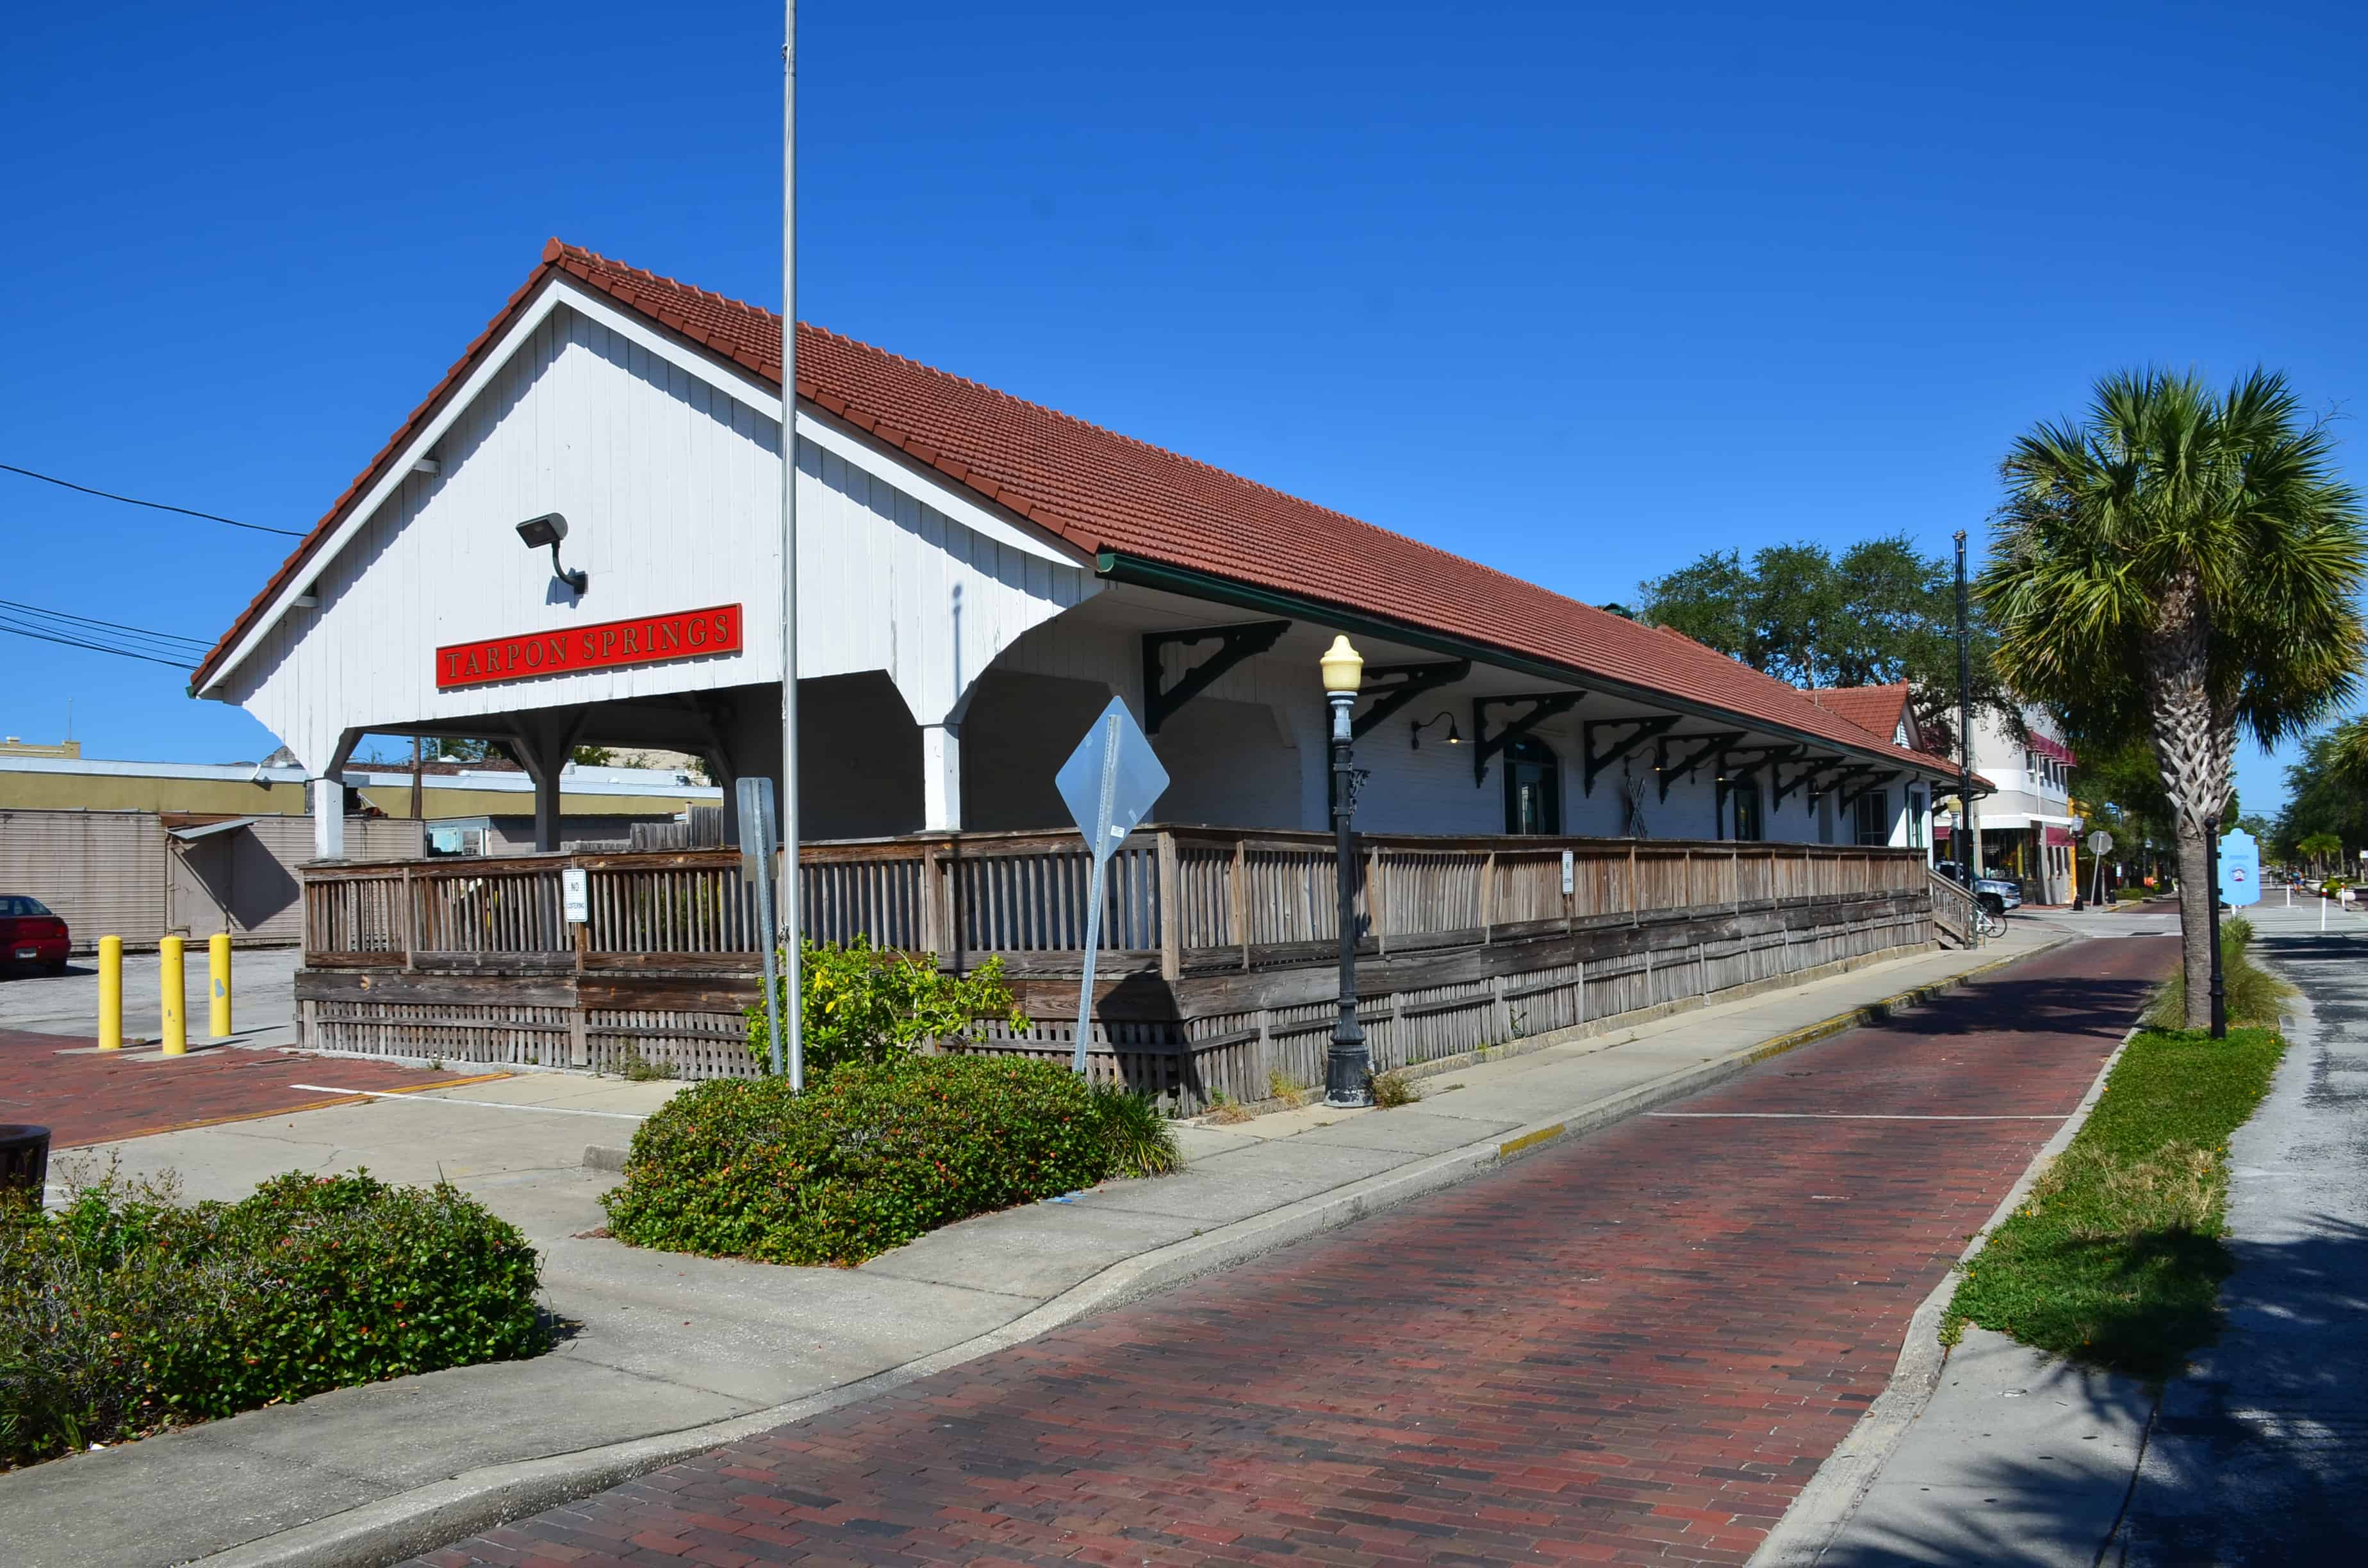 Historic Train Depot Museum in Tarpon Springs, Florida